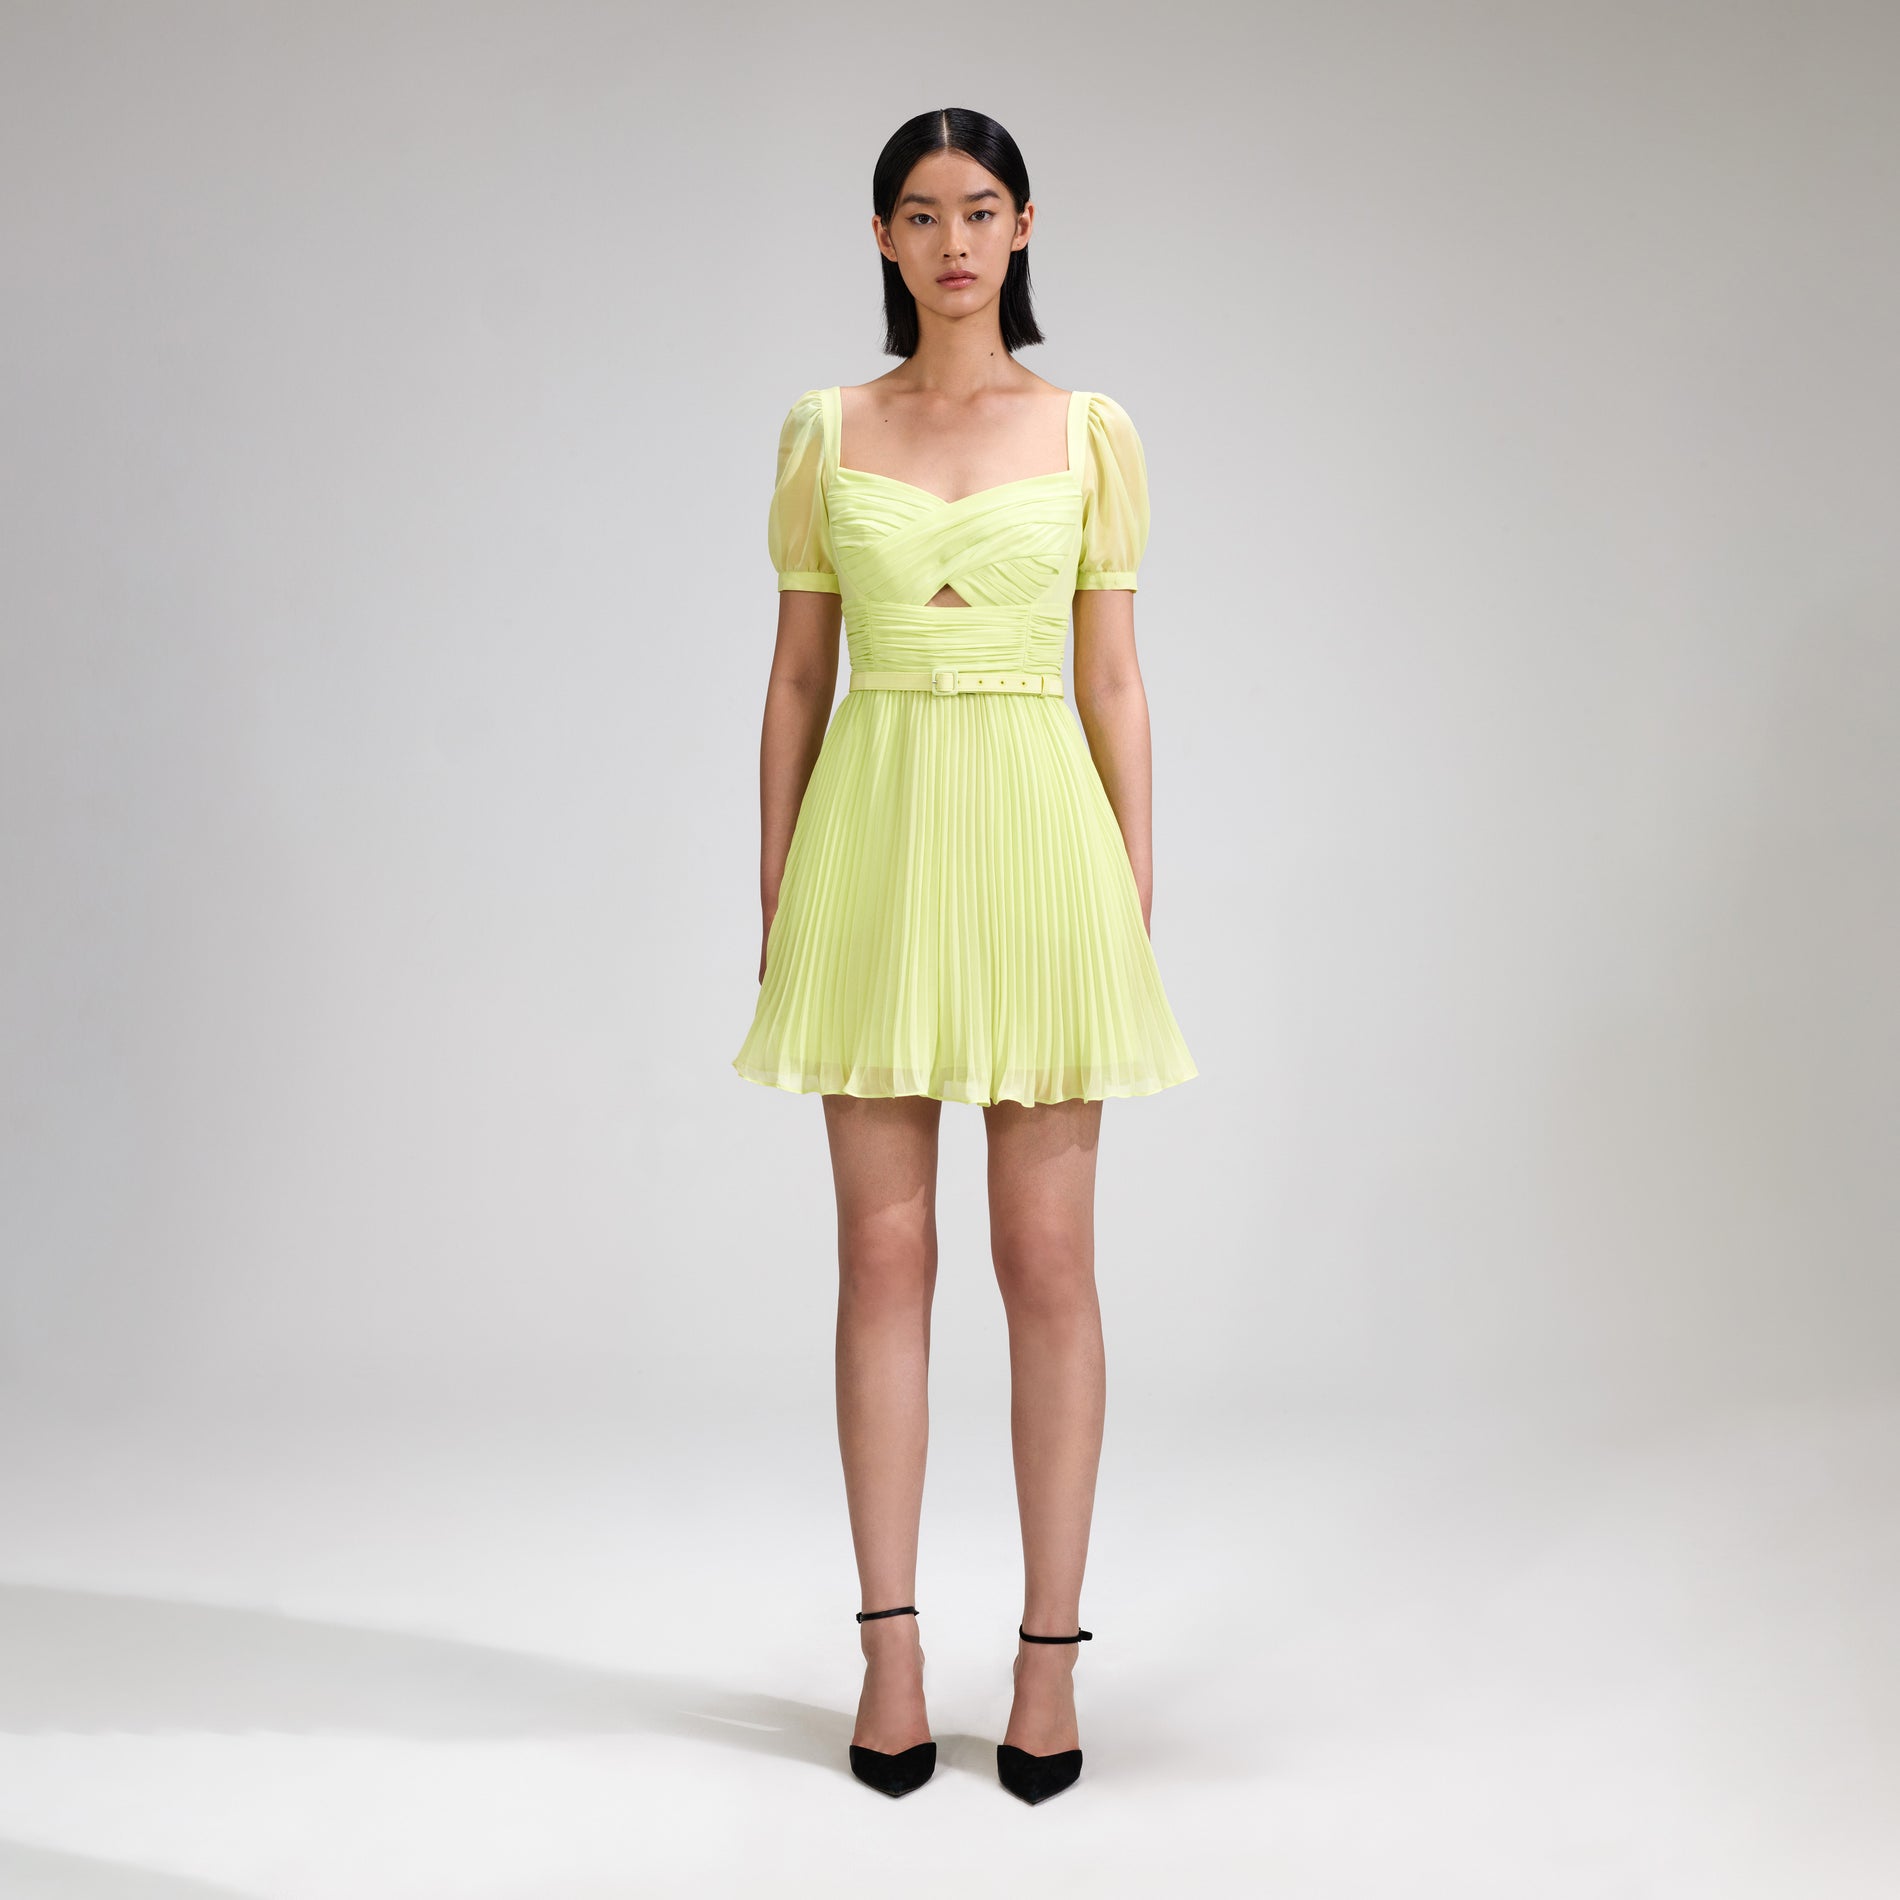 A woman wearing the Lime Chiffon Mini Dress